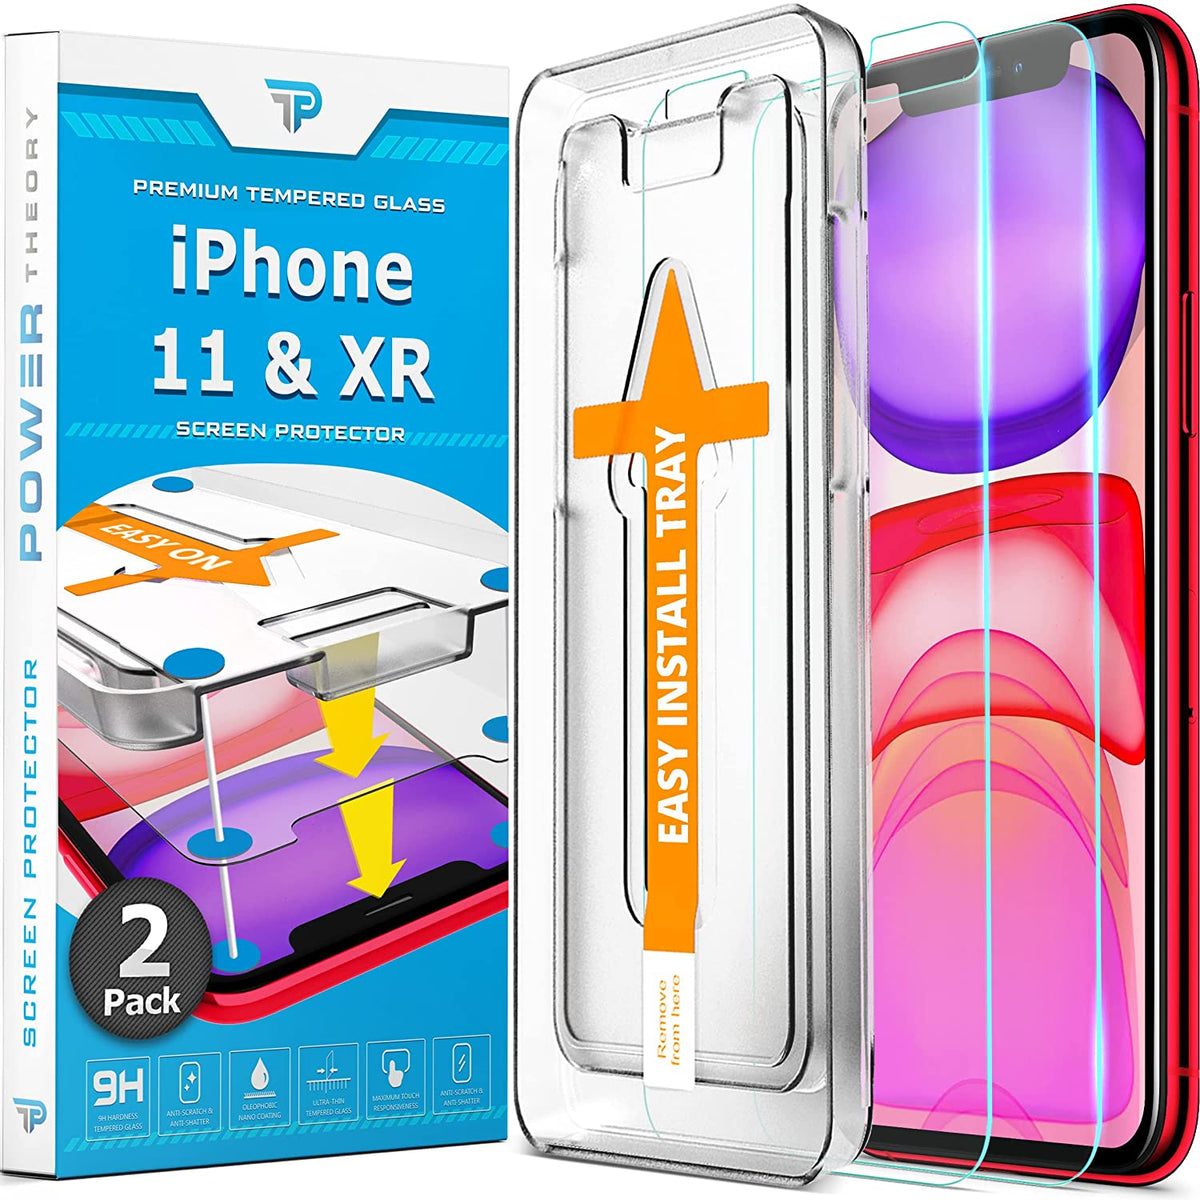 Saii 3D Premium iPhone 11 Tempered Glass Screen Protector - 9H - 2Pcs.